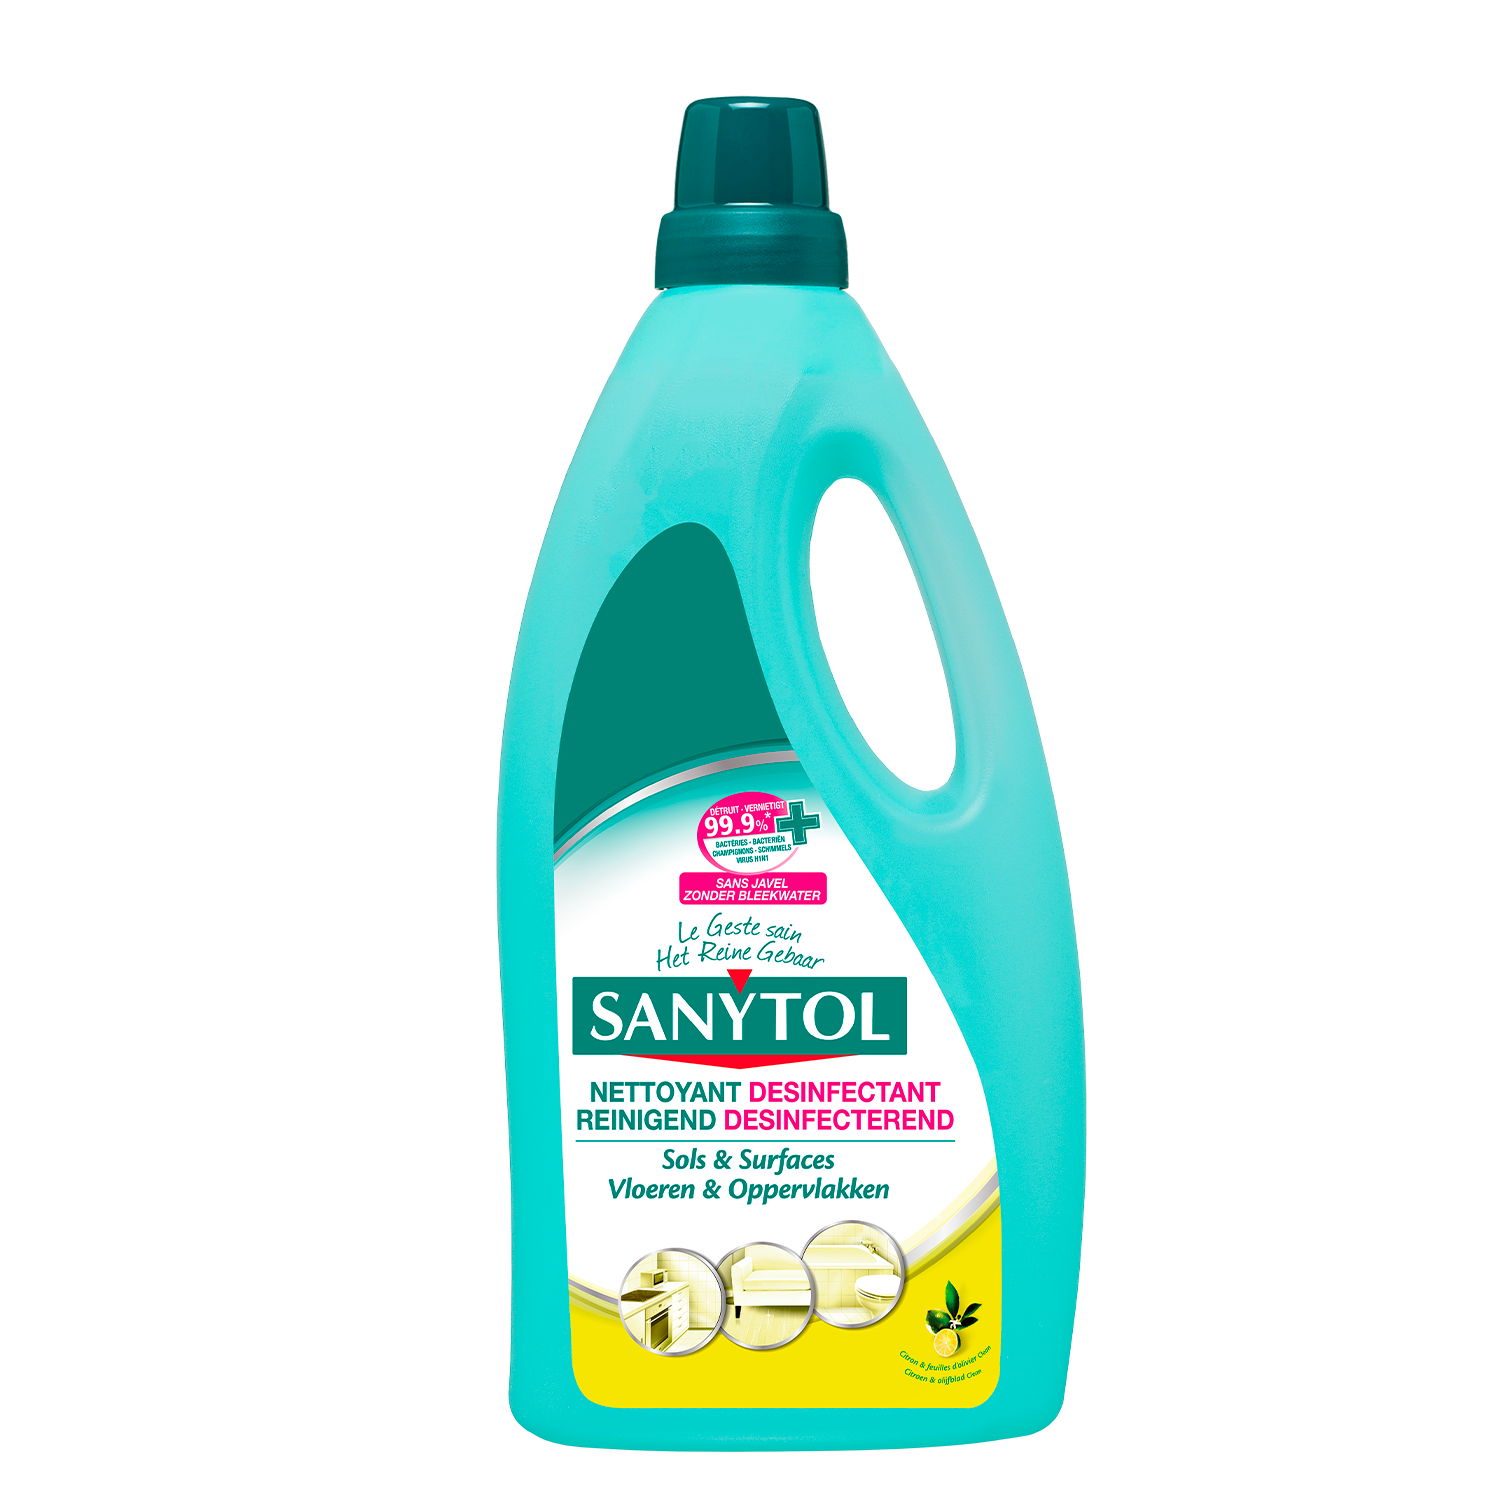 Sanytol Nettoyant désinfectant 4 actions citron vert 